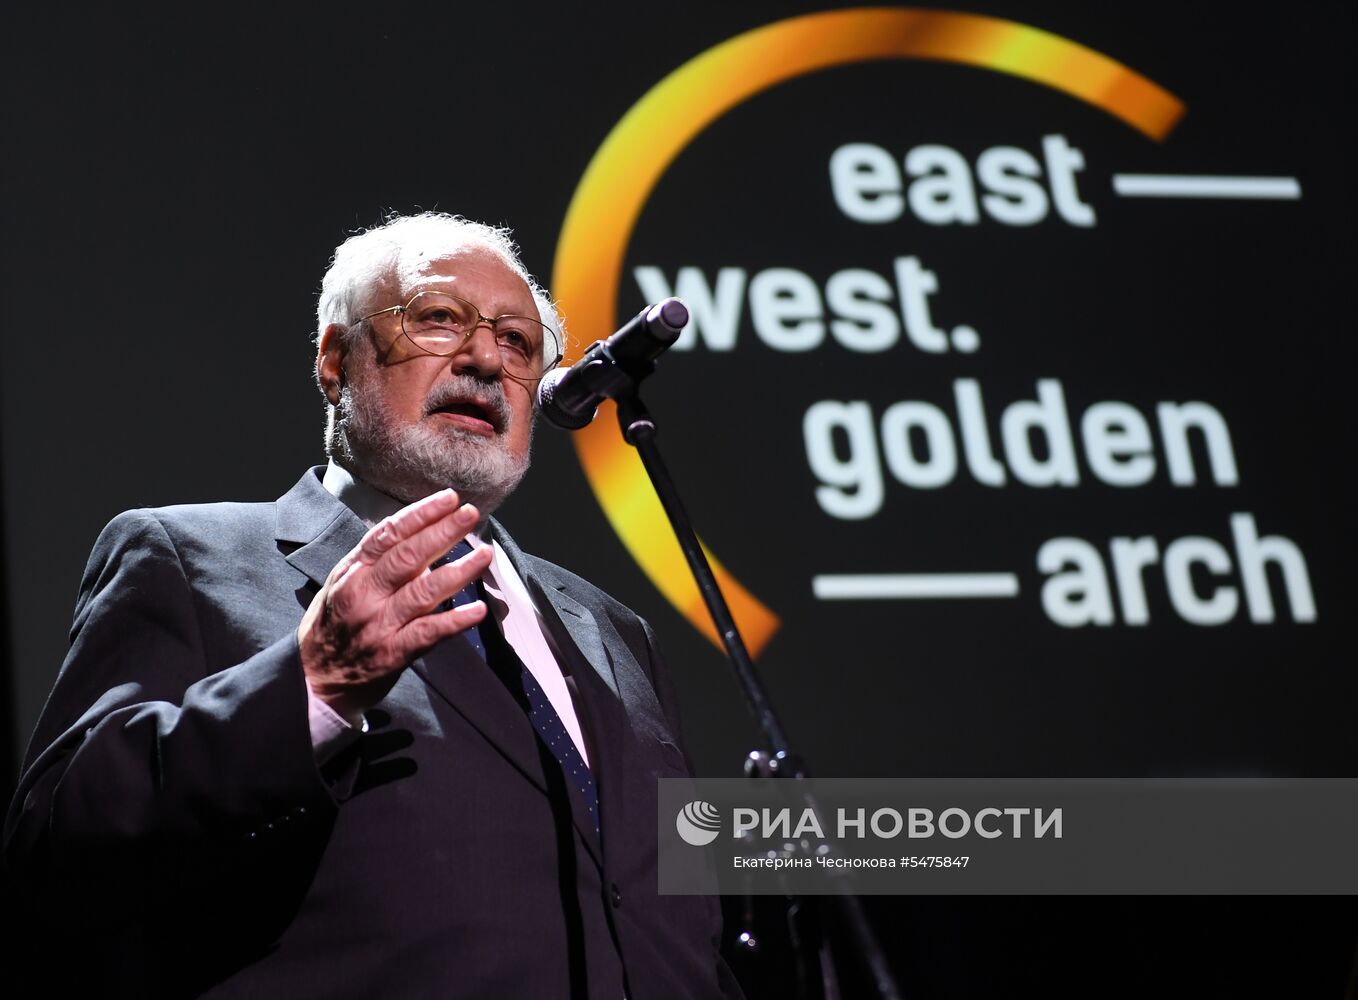 Первая церемония вручения кинематографической премии "Восток — Запад. Золотая арка"